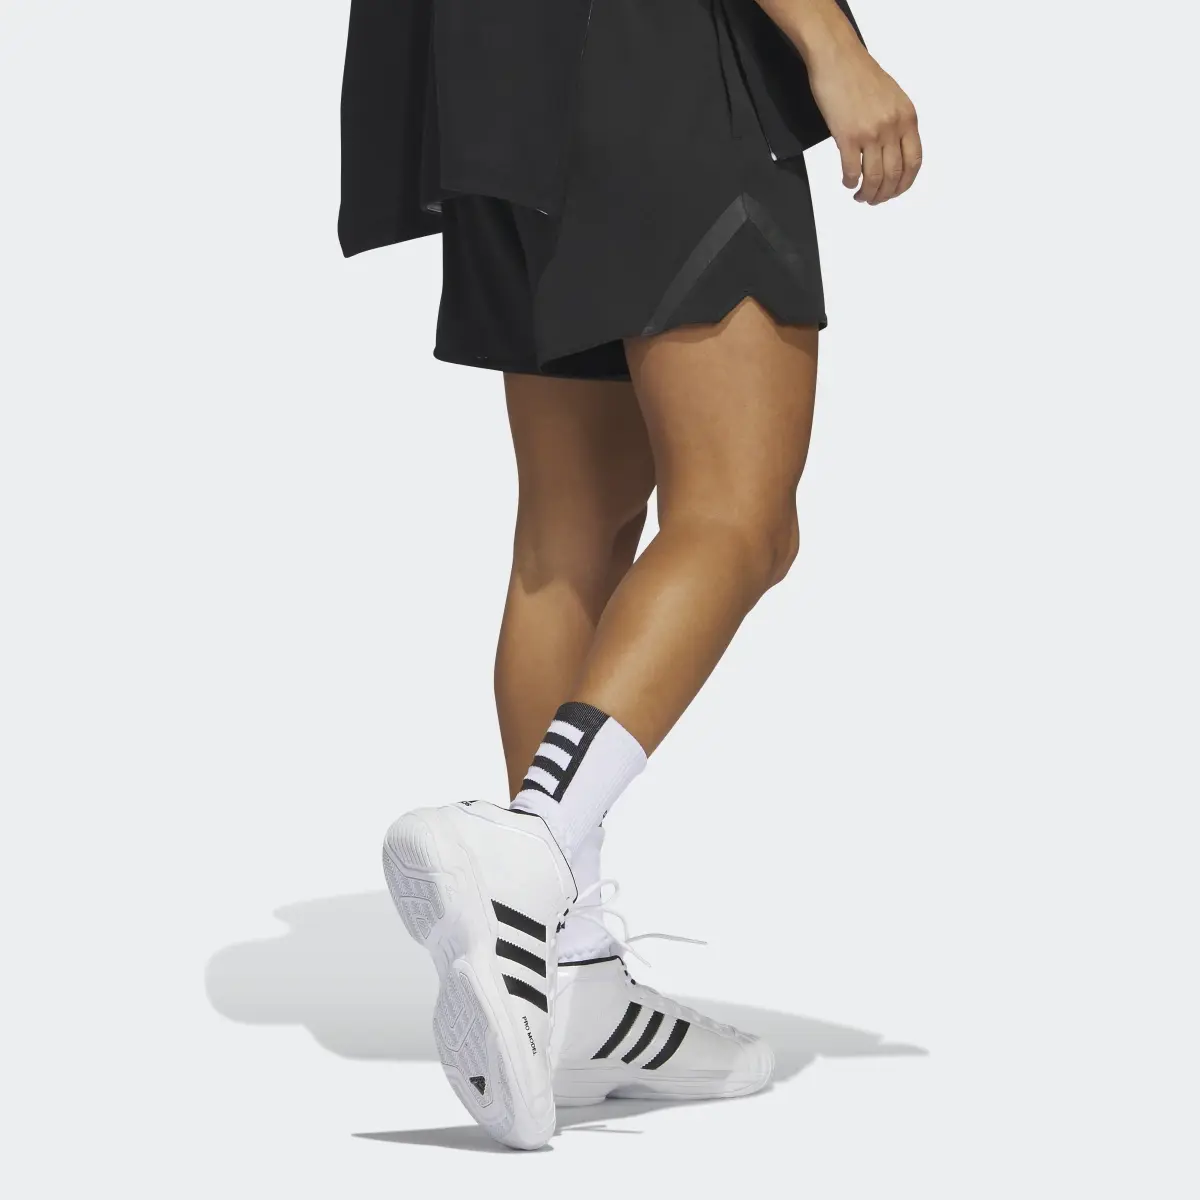 Adidas Select Basketball Shorts. 3